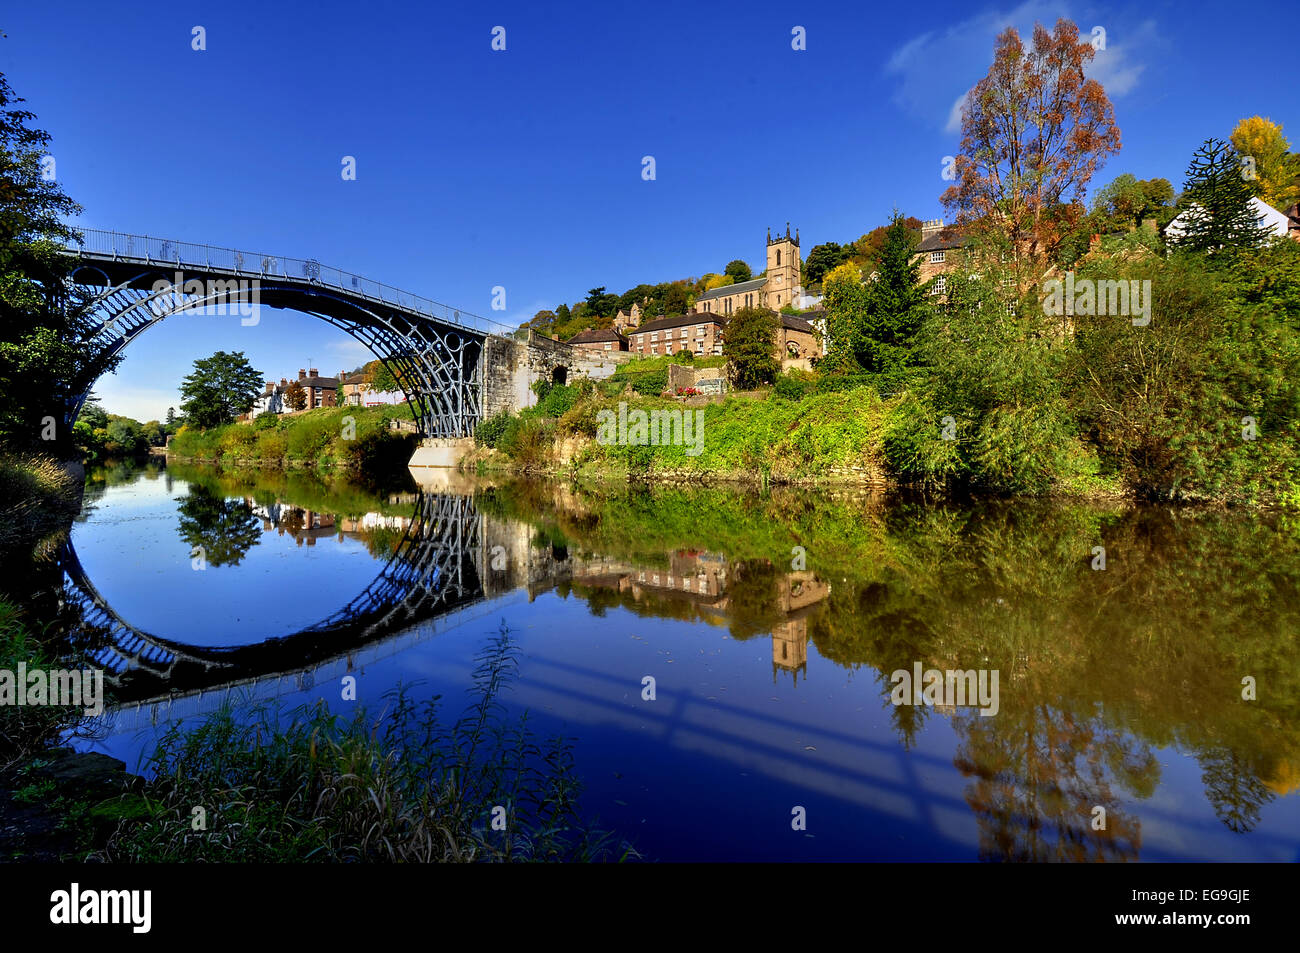 Royaume-uni, Angleterre, Telford, Shropshire, vue symétrique de l'Ironbridge et hill reflétant dans l'eau Banque D'Images